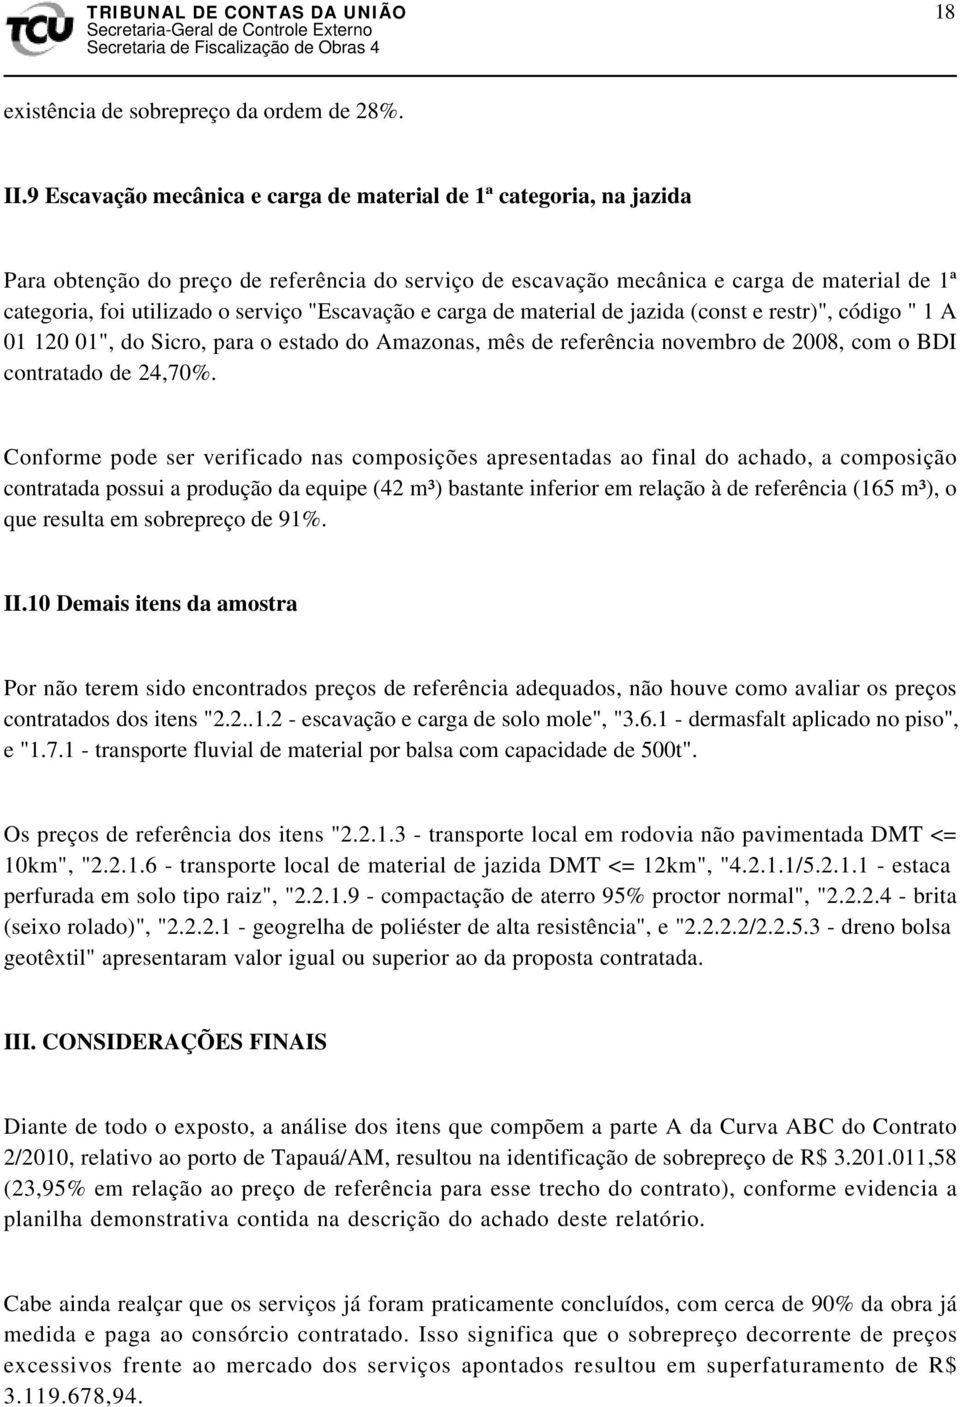 "Escavação e carga de material de jazida (const e restr)", código " 1 A 01 120 01", do Sicro, para o estado do Amazonas, mês de referência novembro de 2008, com o BDI contratado de 24,70%.